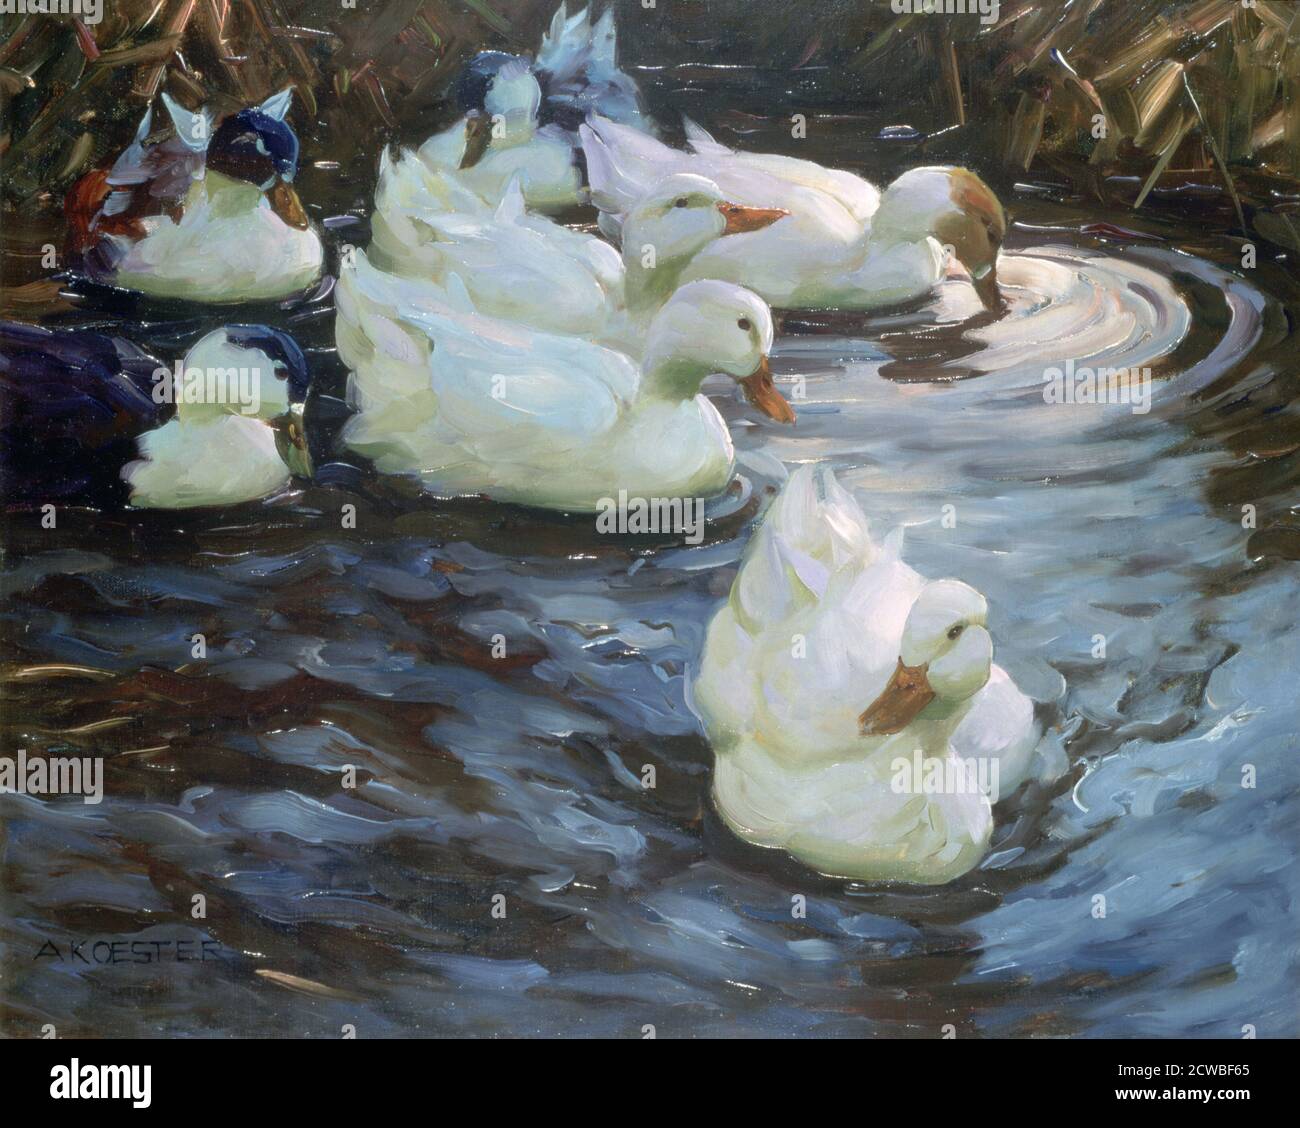 Ducks on a Pond', c1884-1932. Artist: Alexander Koester. Alexander Koester(1864-1932) was a german painter. Stock Photo